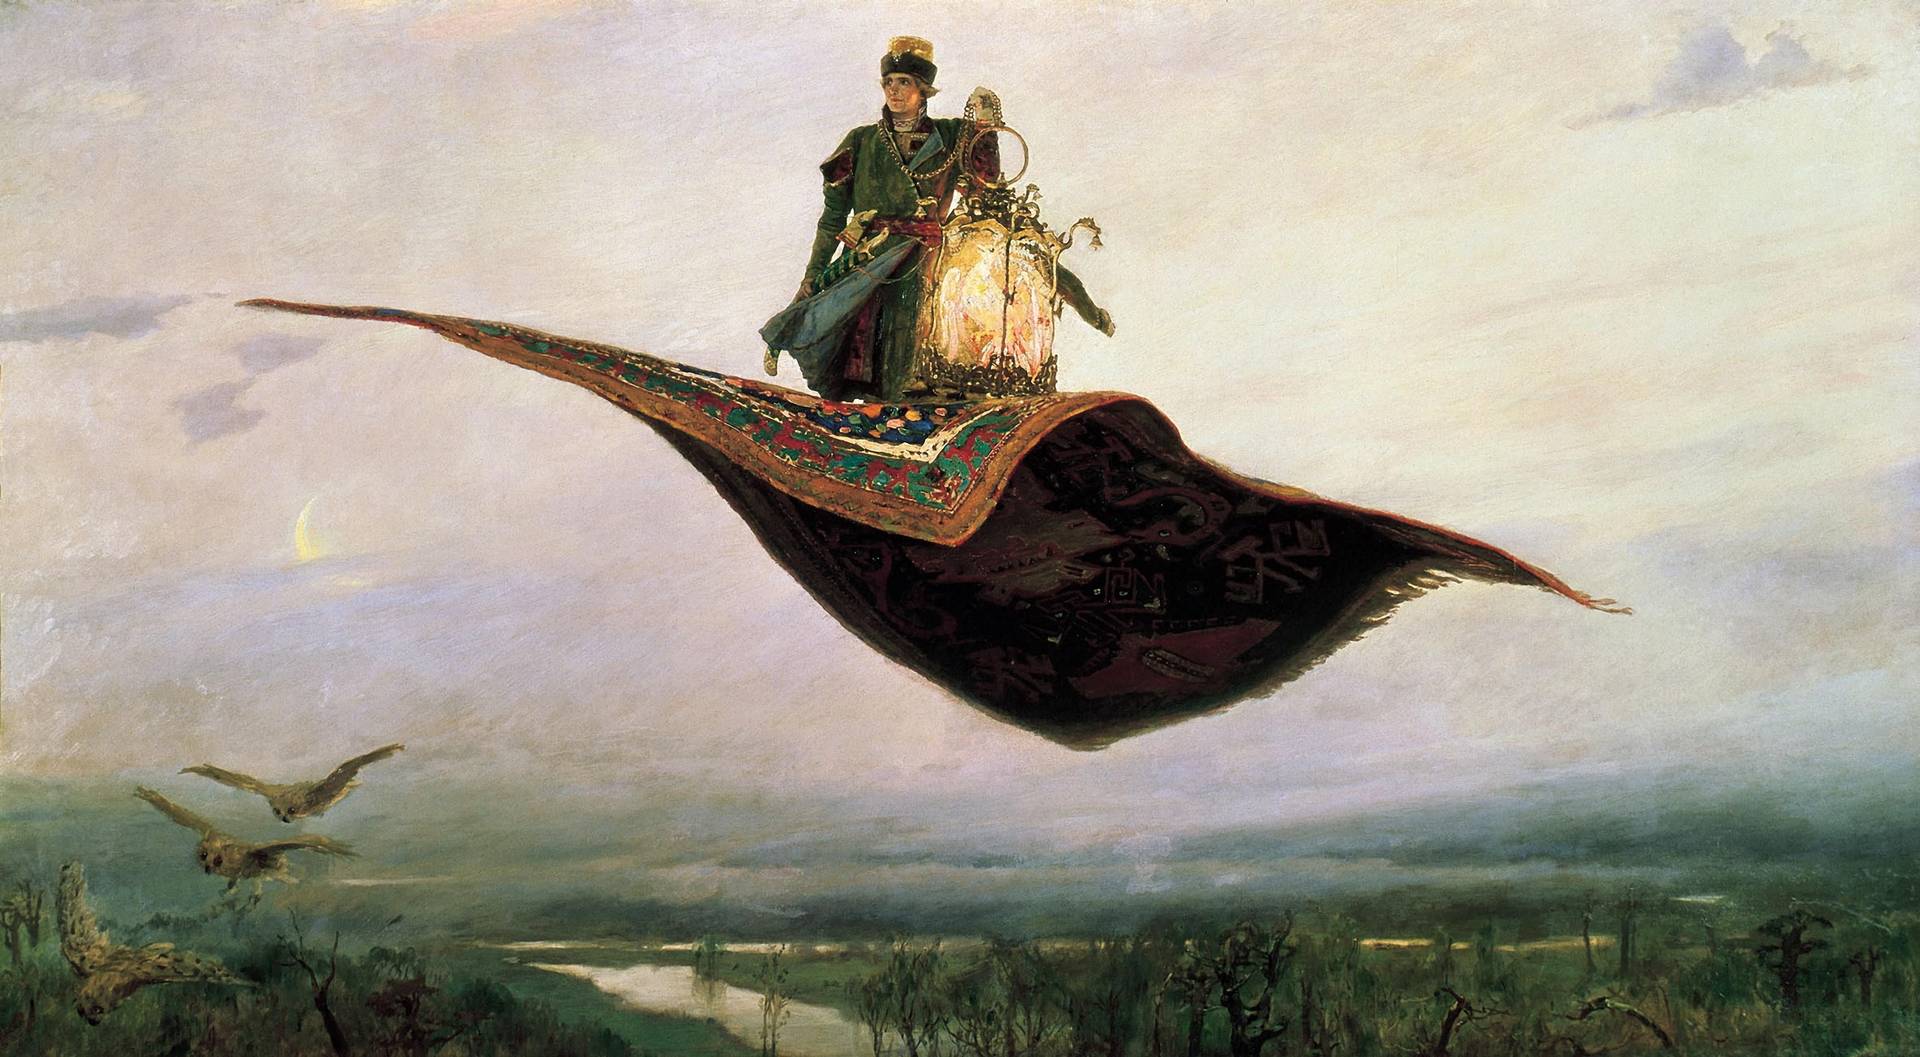 Виктор Васнецов. Ковер-самолет. 1880